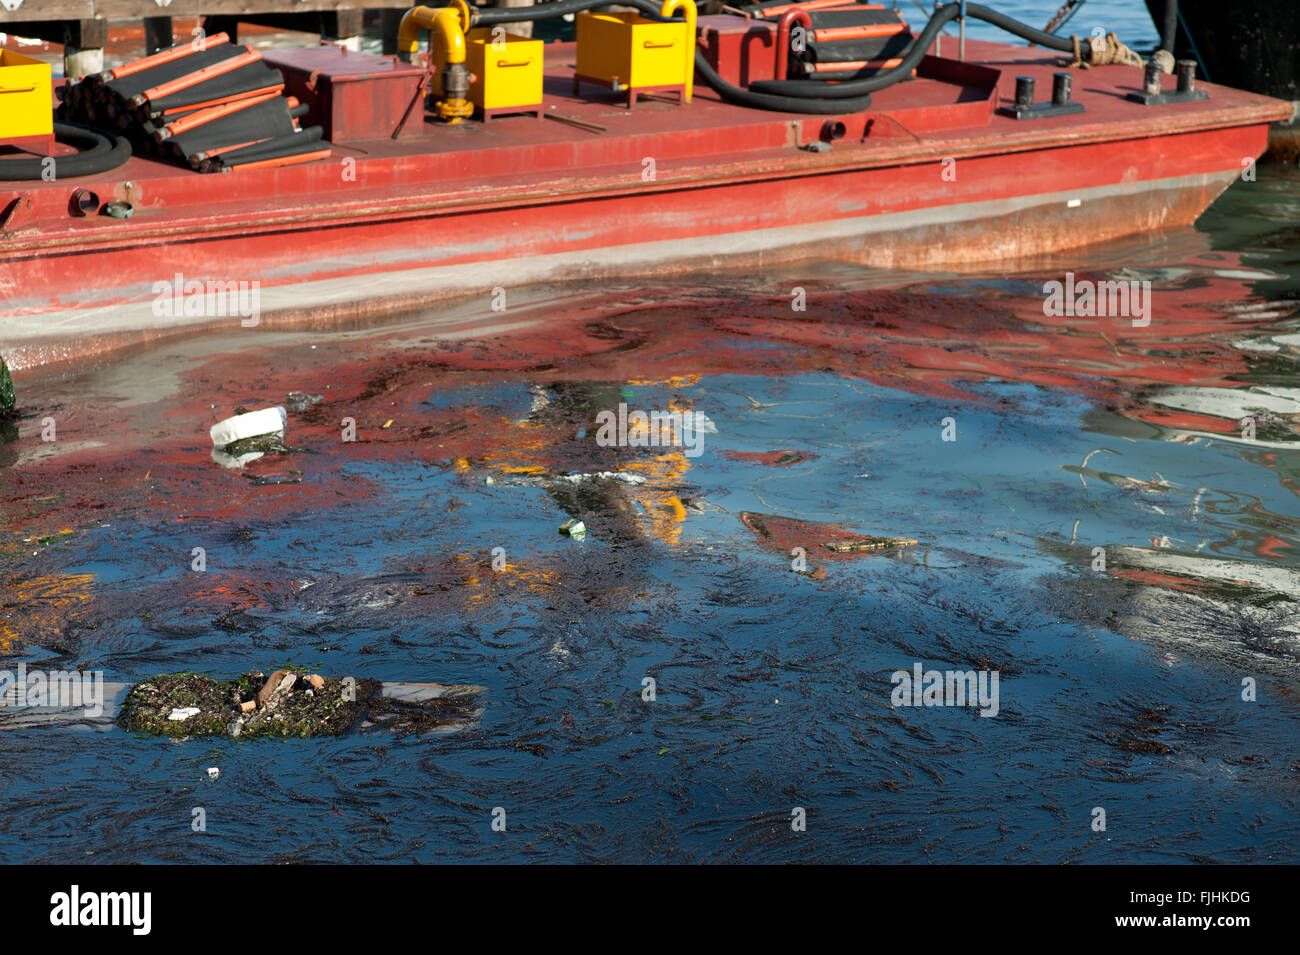 Zona empresarial e industrial de Venecia mostrando la contaminación en el agua, Italia Foto de stock